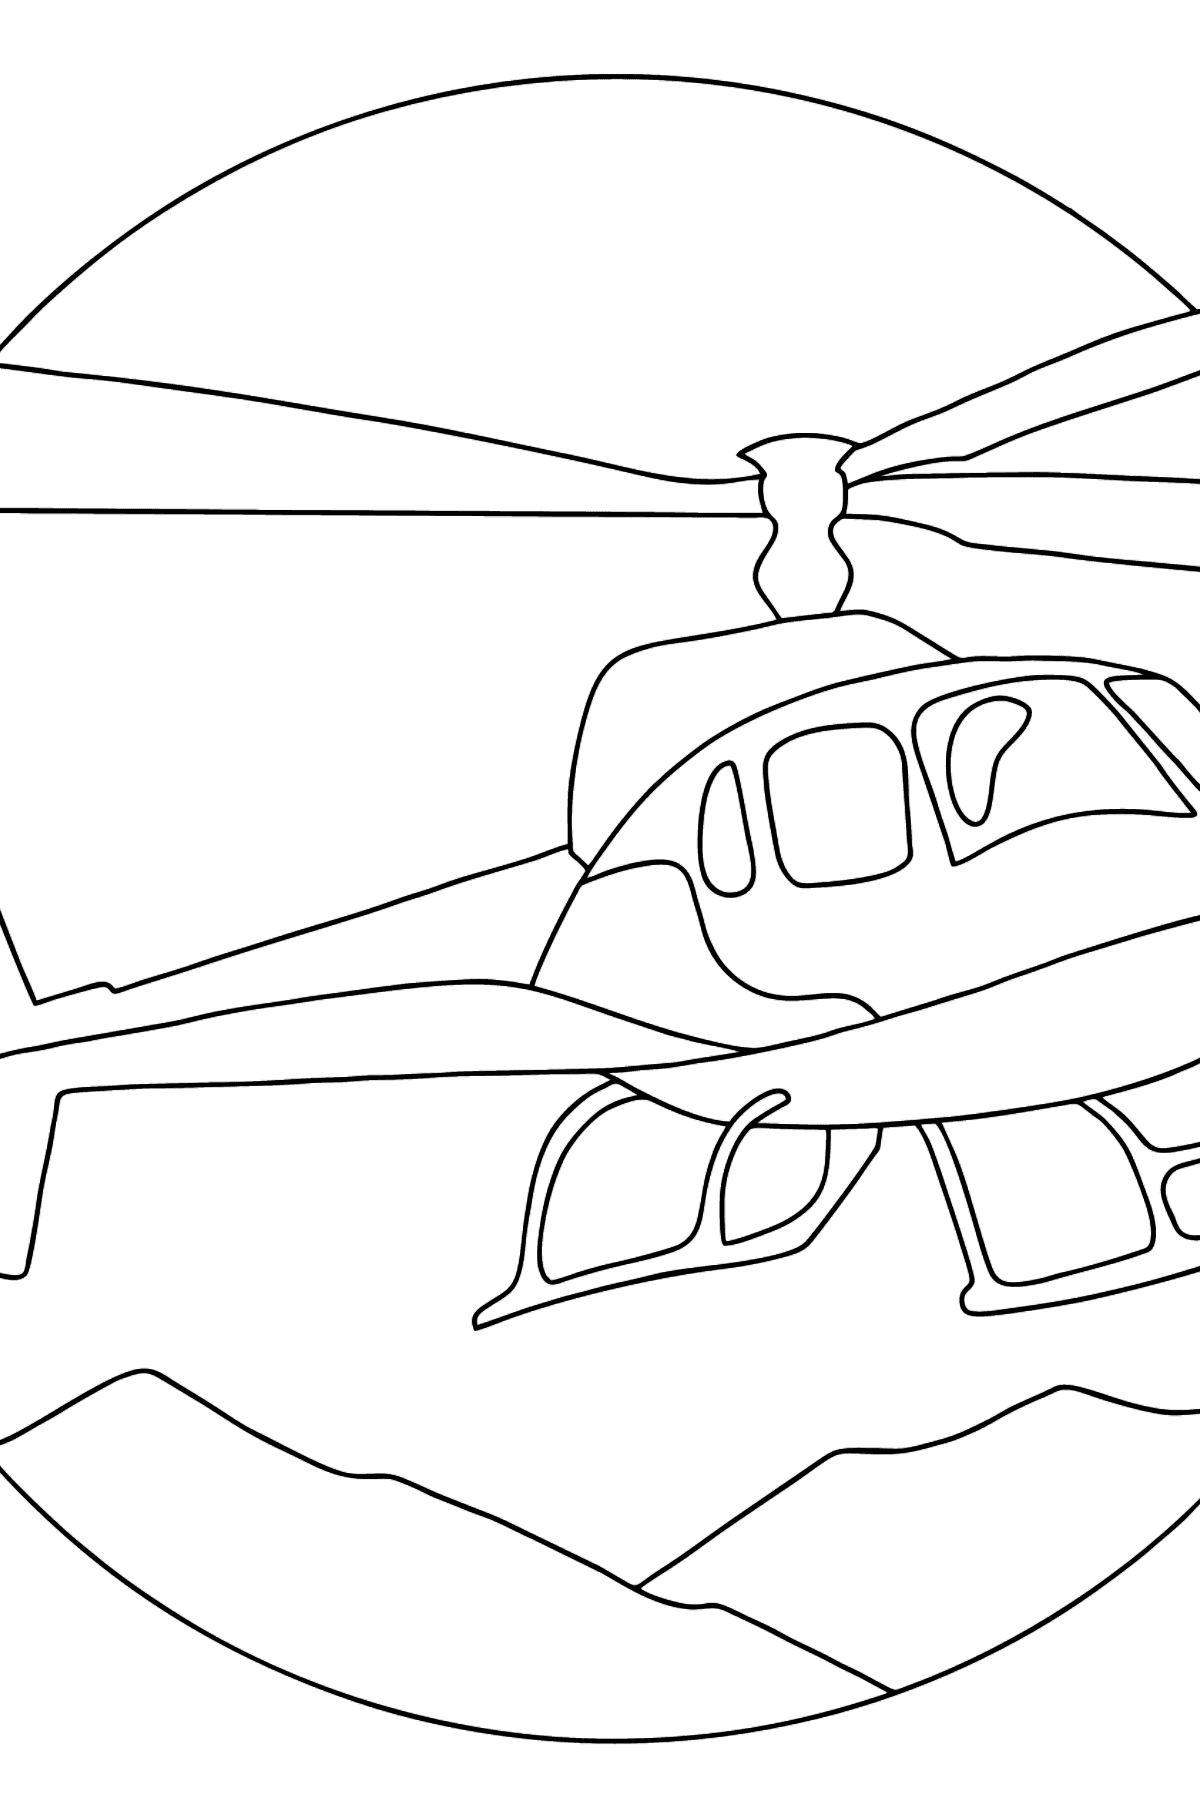 Kleurplaat stadshelikopter - kleurplaten voor kinderen